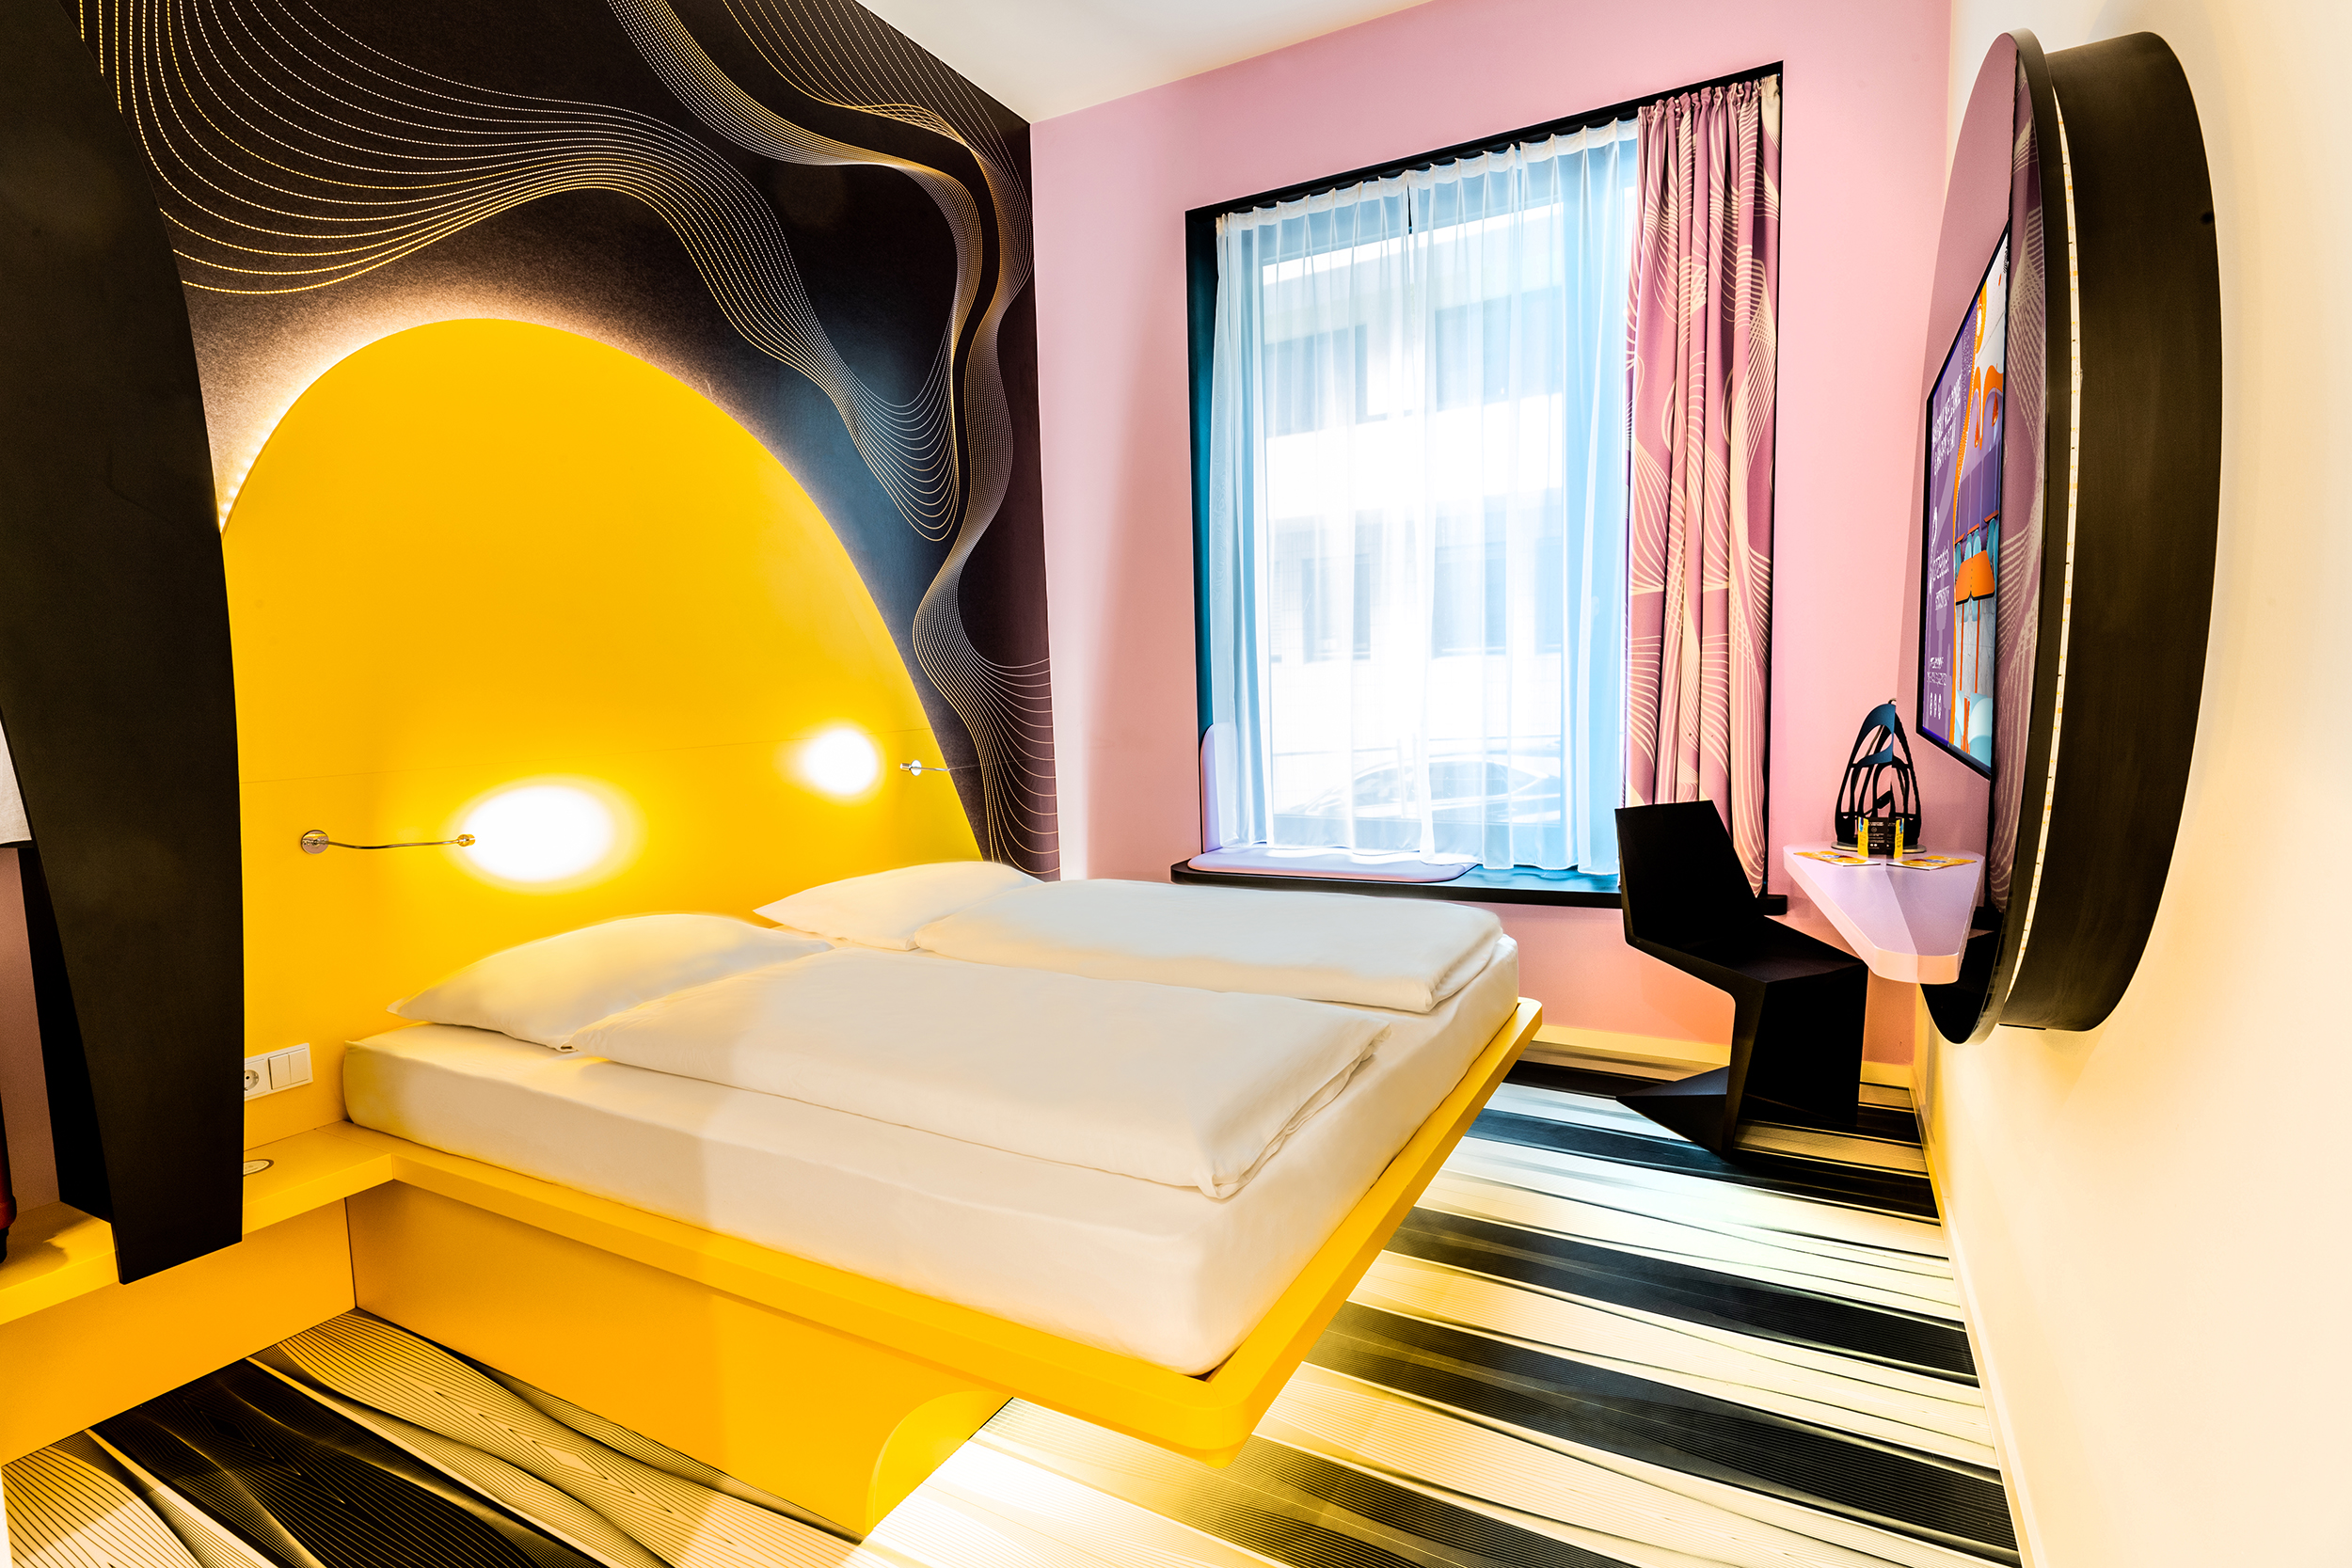 Ein gemütliches Hotelzimmer in warmen Farben im prizeotel in Bonn